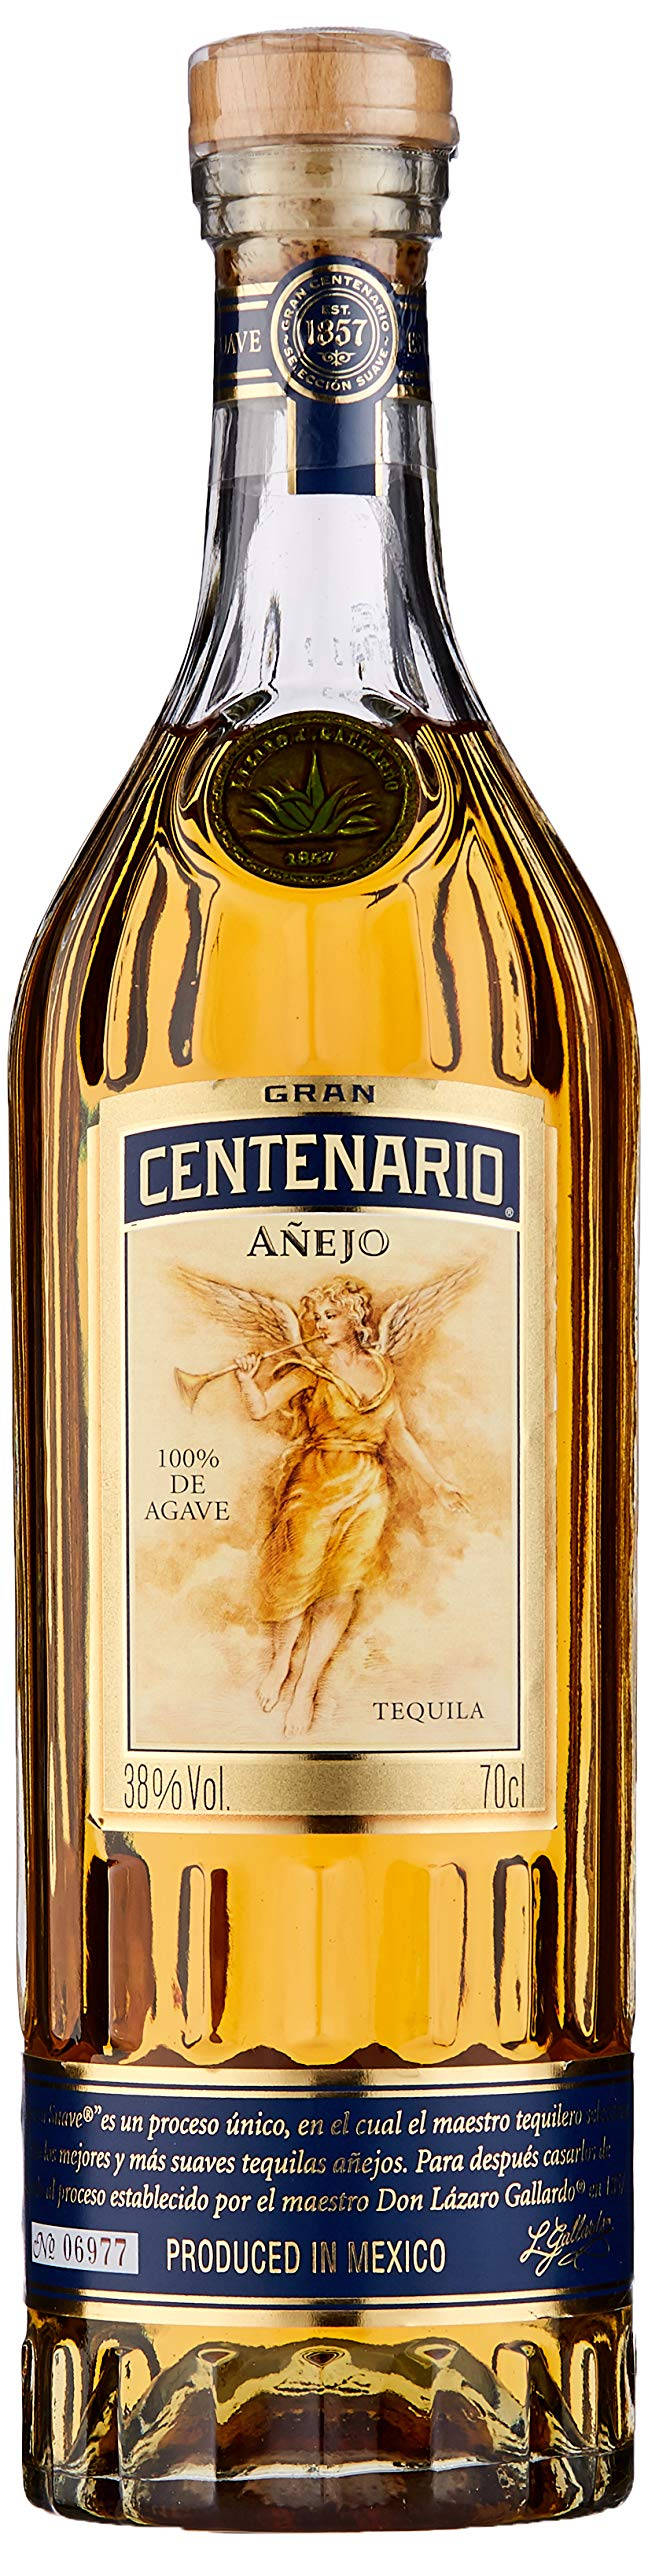 Gran Centenario Tequila Añejo Bottle Tapet Wallpaper